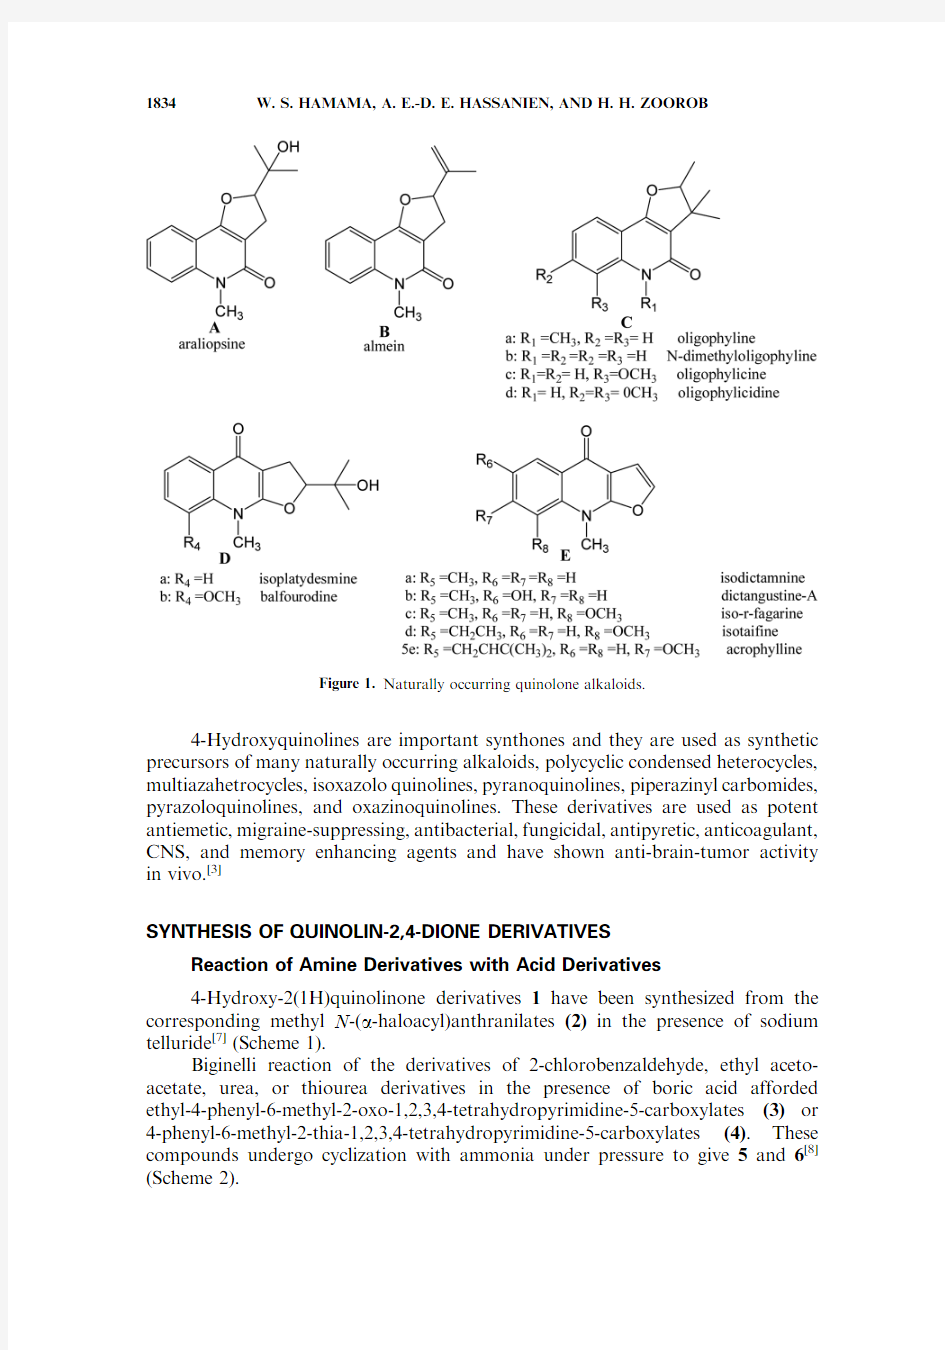 喹啉酮类化合物合成与应用